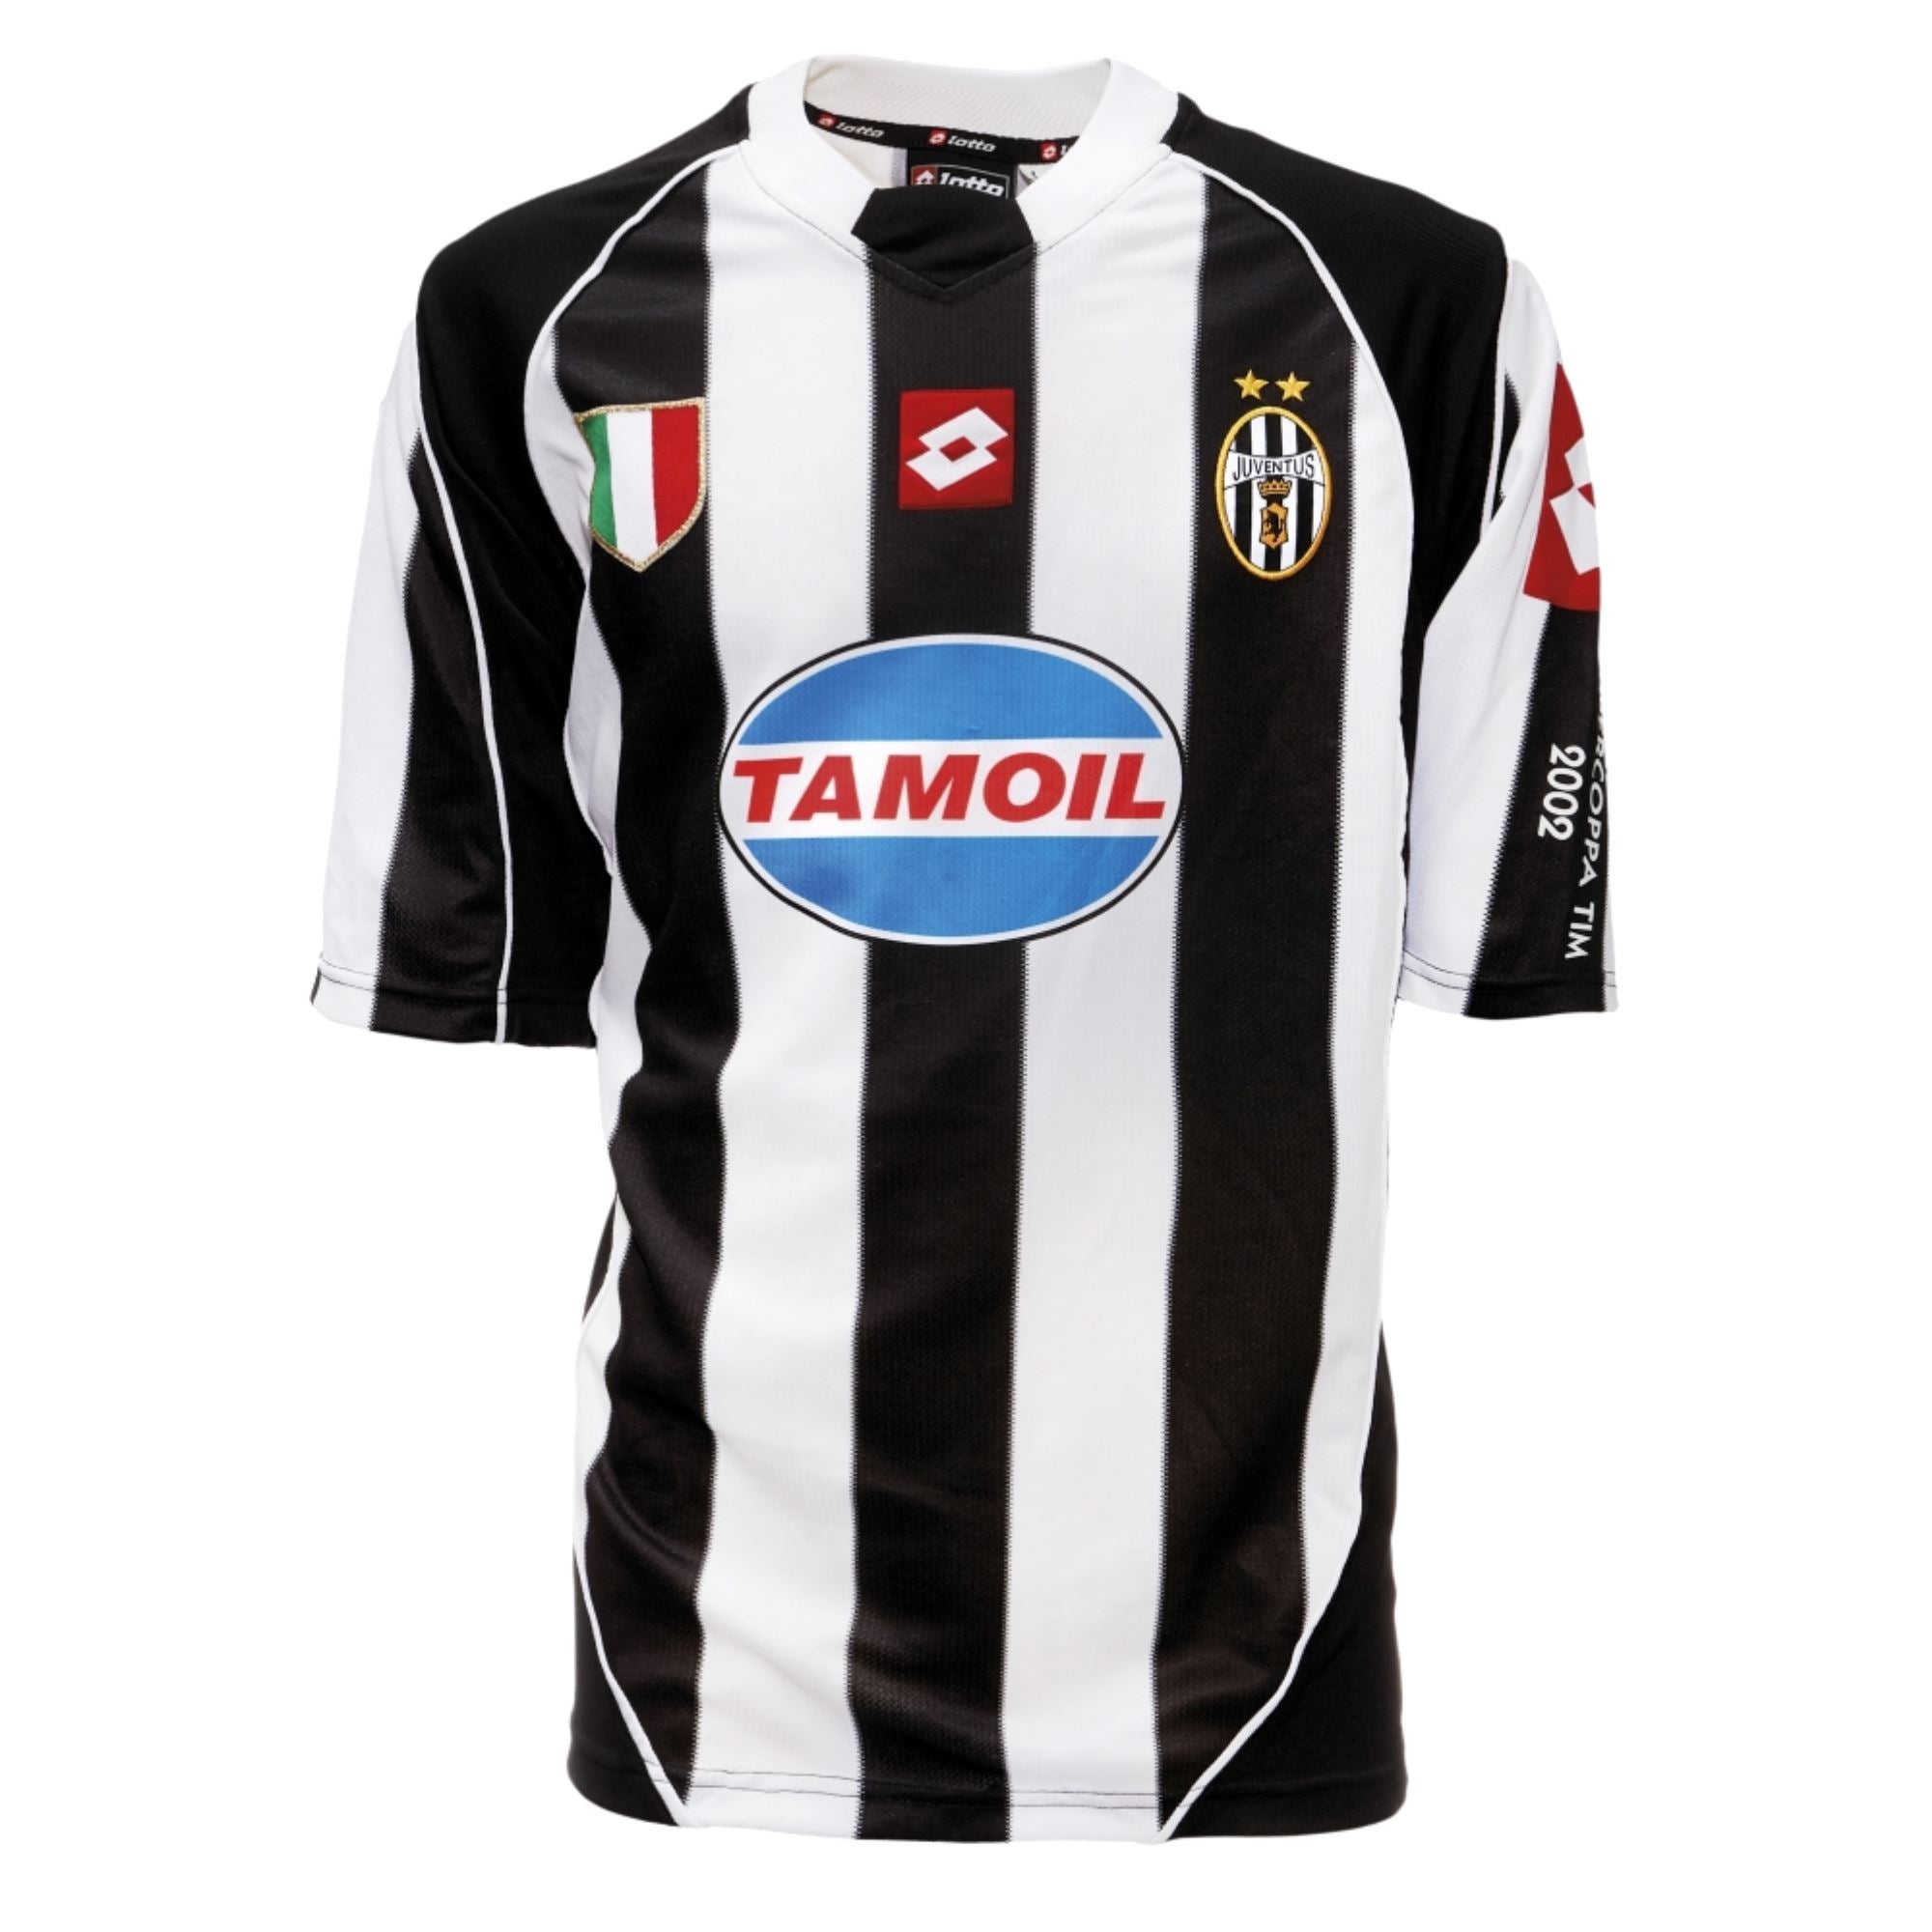 2002/03 Juventus Home Jersey - ITASPORT